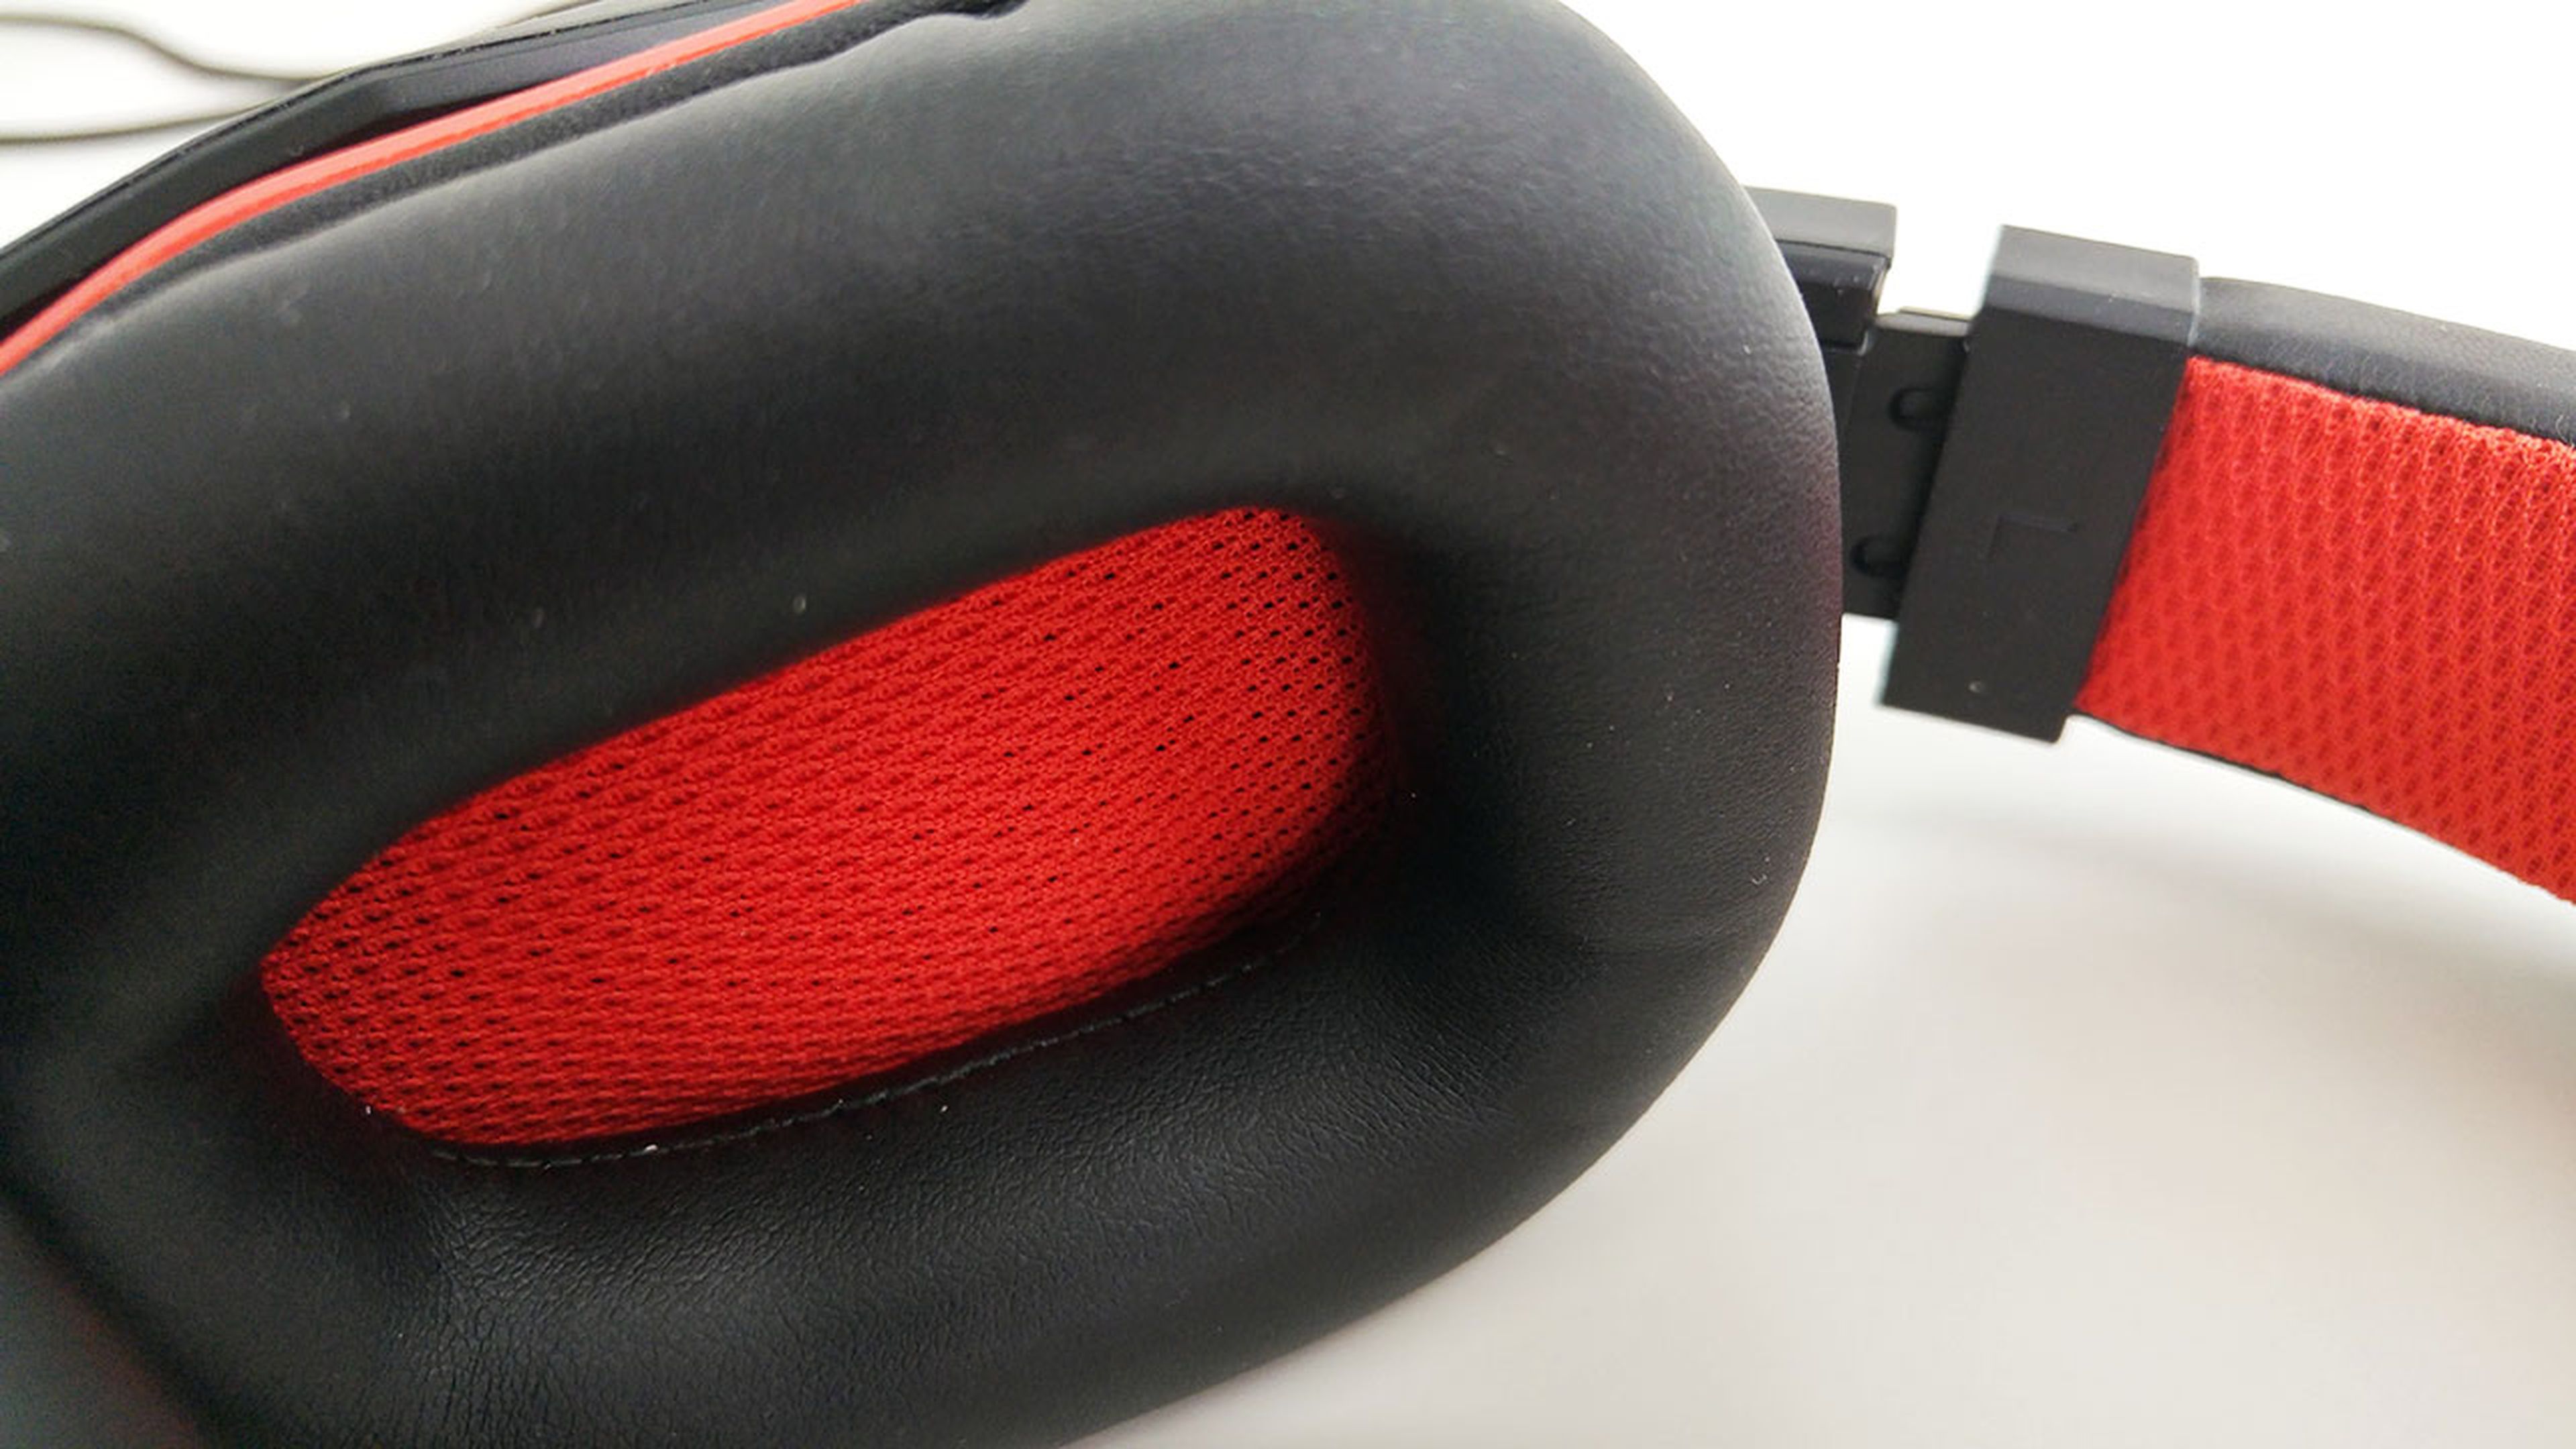 Almohadillas del Lenovo Y gaming surround sound headset